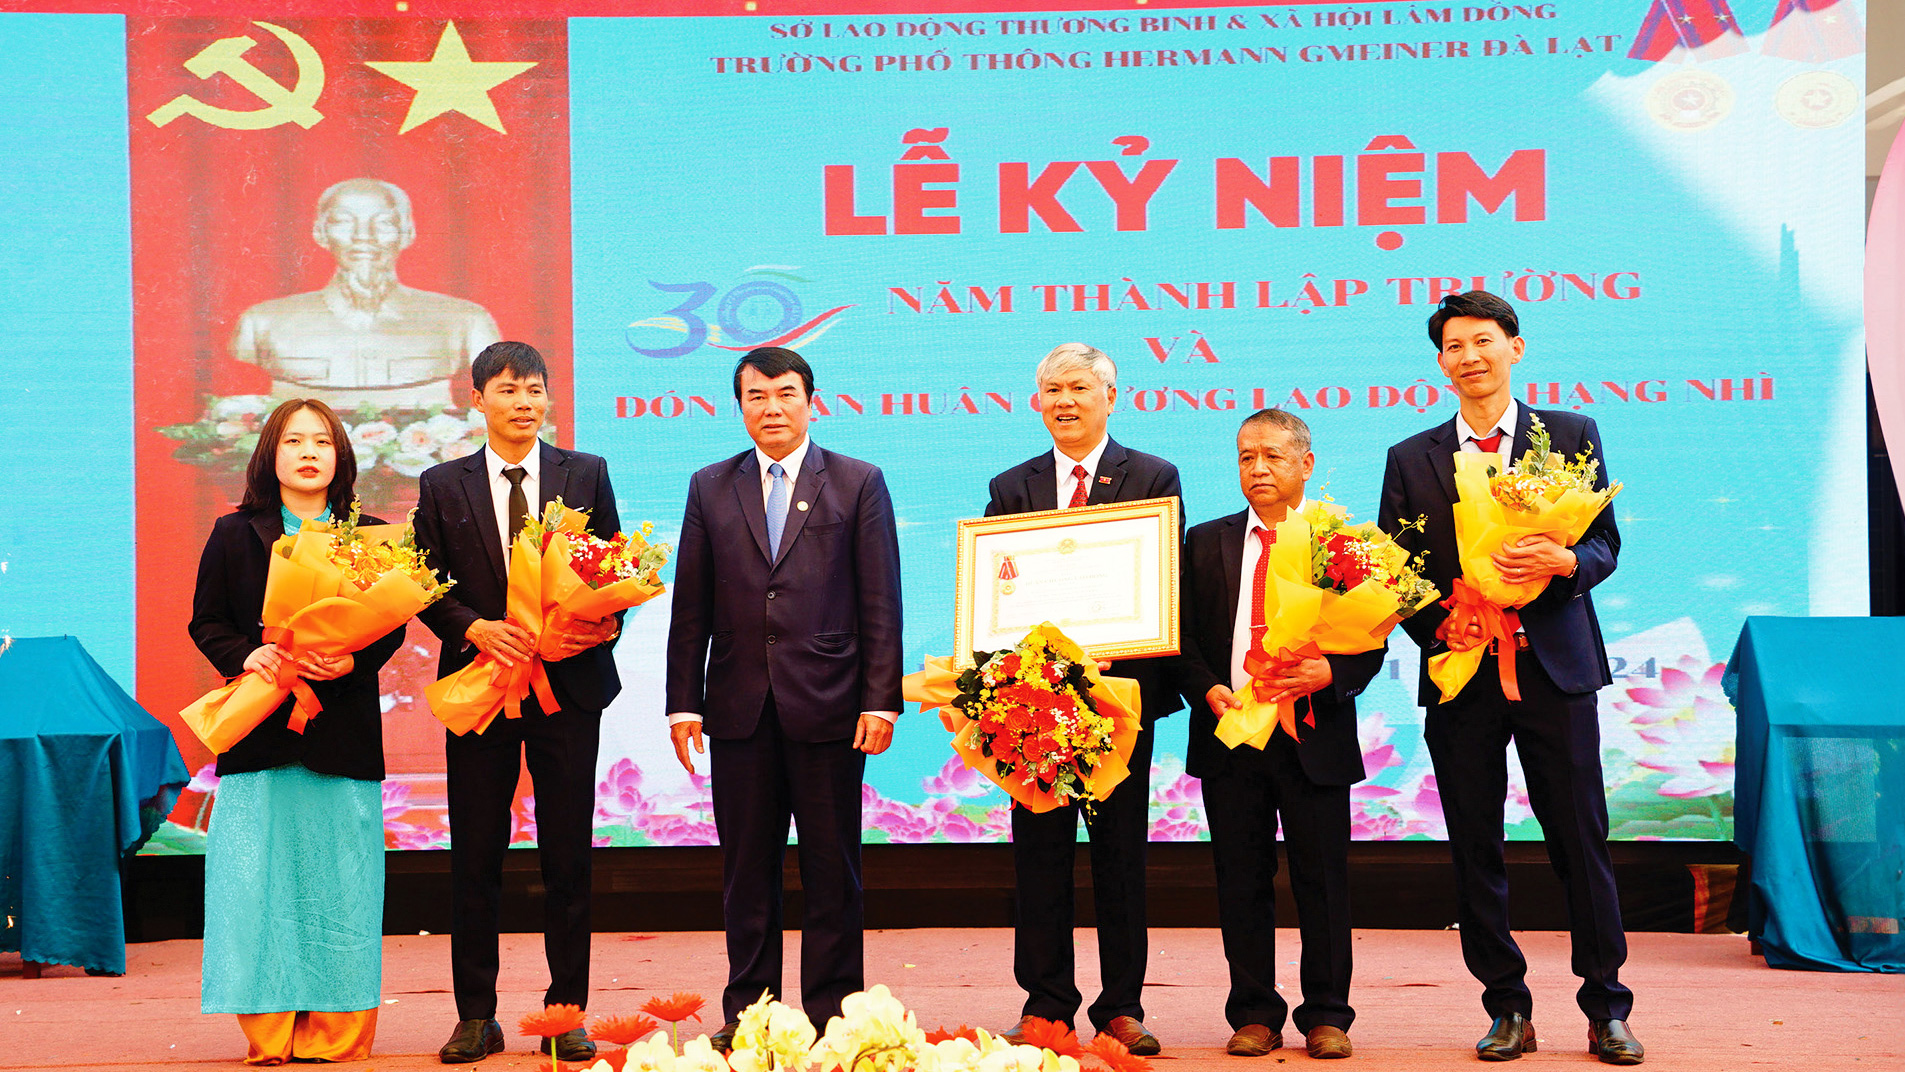 Phó Chủ tịch UBND tỉnh Phạm S, trao Huân chương Lao động hạng Nhì cho tập thể Trường Hermann Gmeiner. Ảnh: M.Đạo